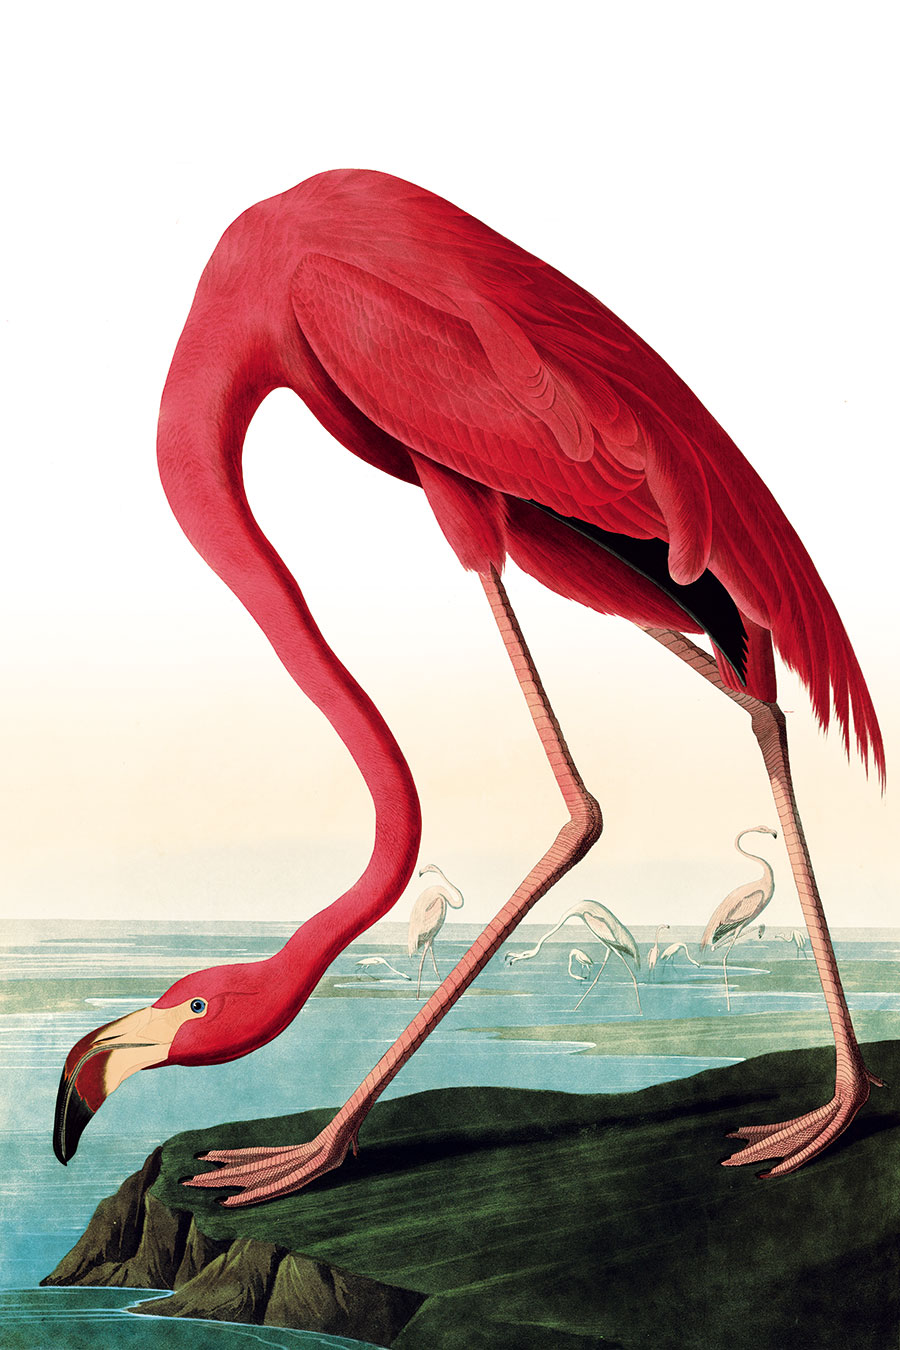 高清 火烈鸟装饰画 素材大图下载 河边的火烈鸟